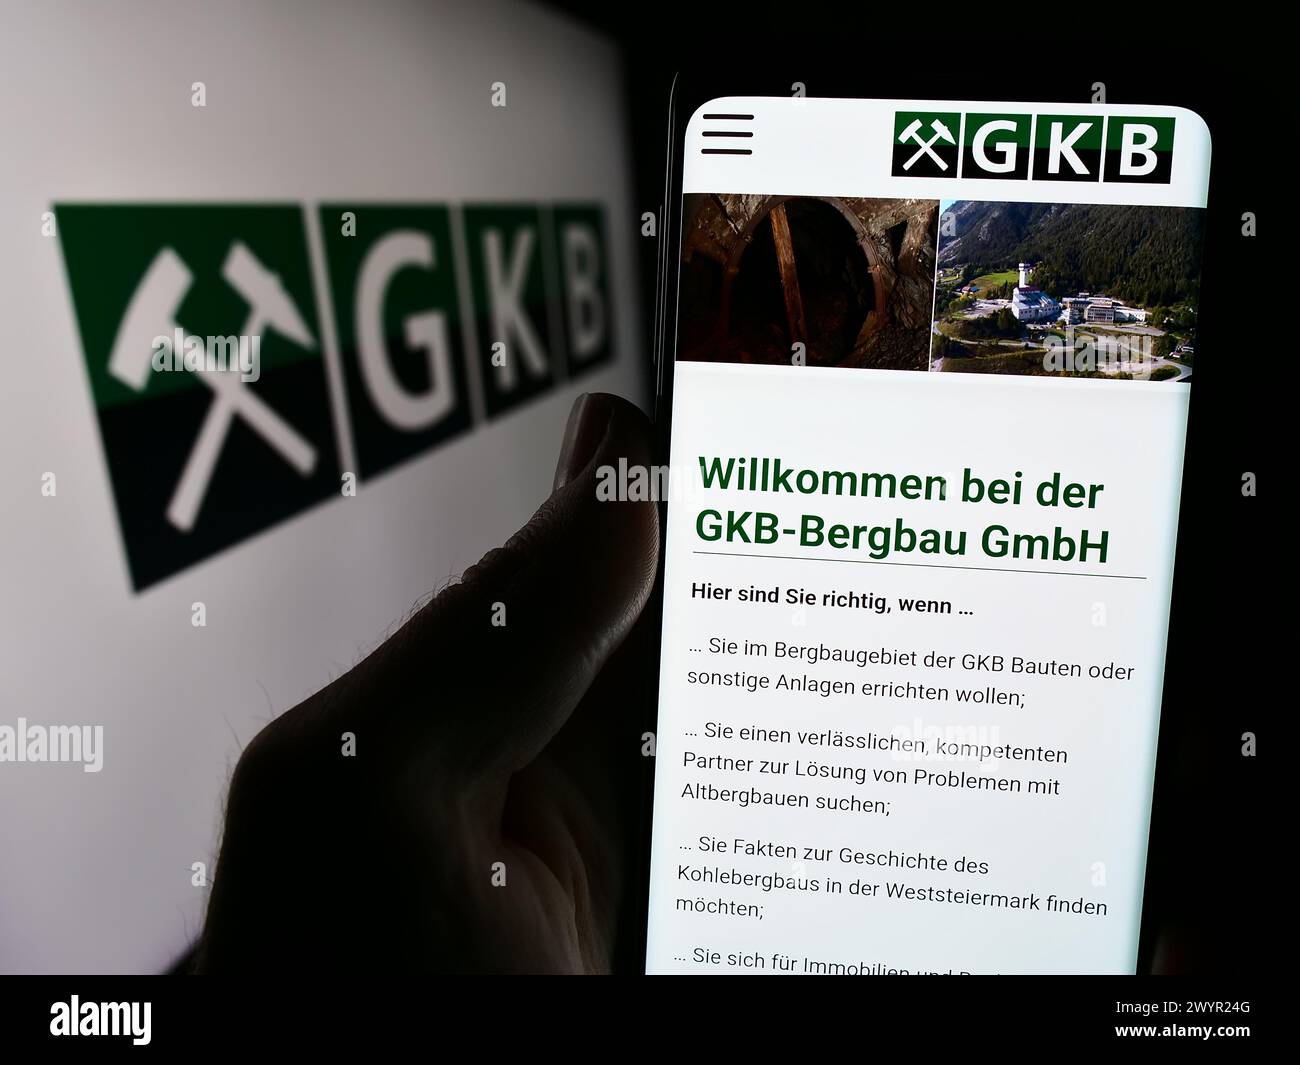 Persona che detiene lo smartphone con il sito web dell'azienda austriaca GKB Bergbau GmbH davanti al logo. Messa a fuoco al centro del display del telefono. Foto Stock